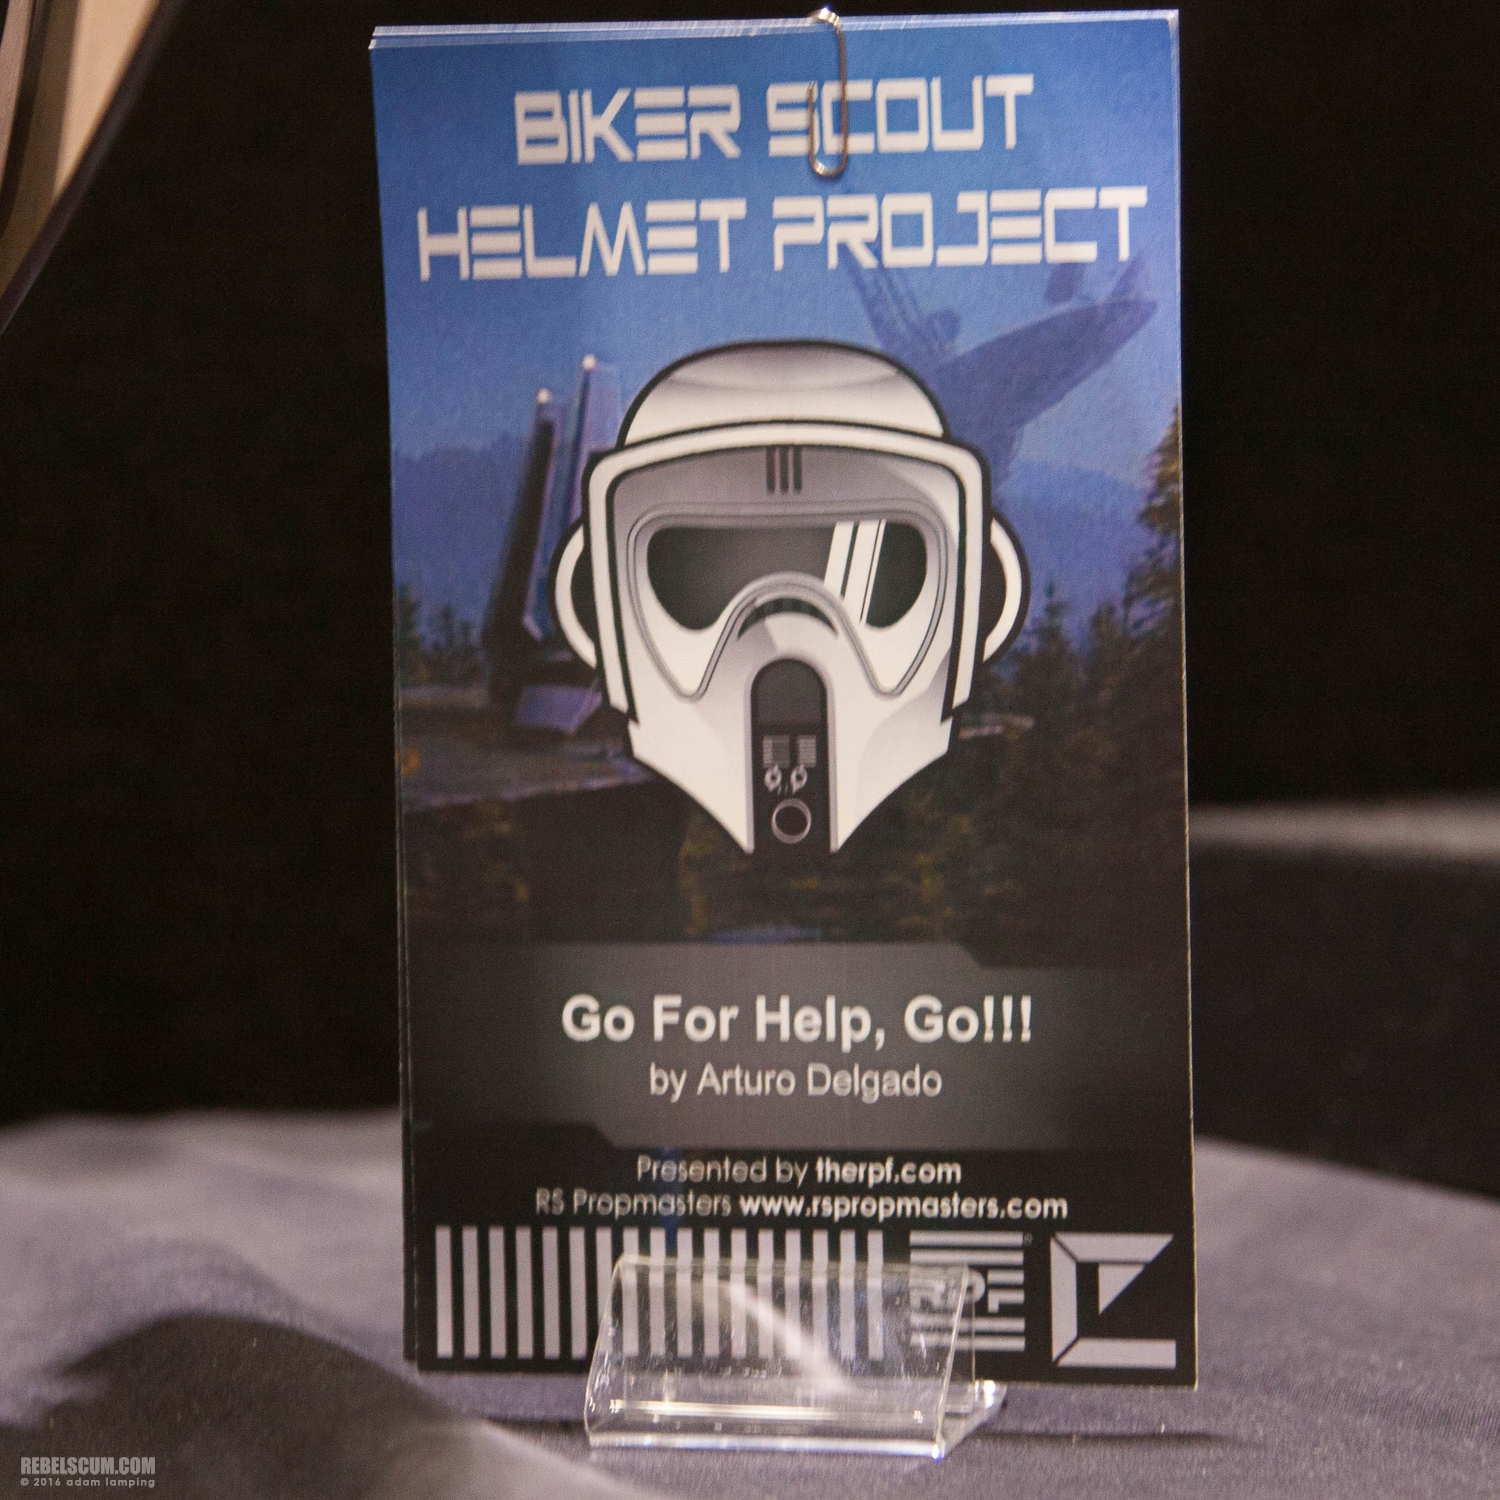 star-wars-celebration-2016-biker-scout-helmet-project-080.jpg